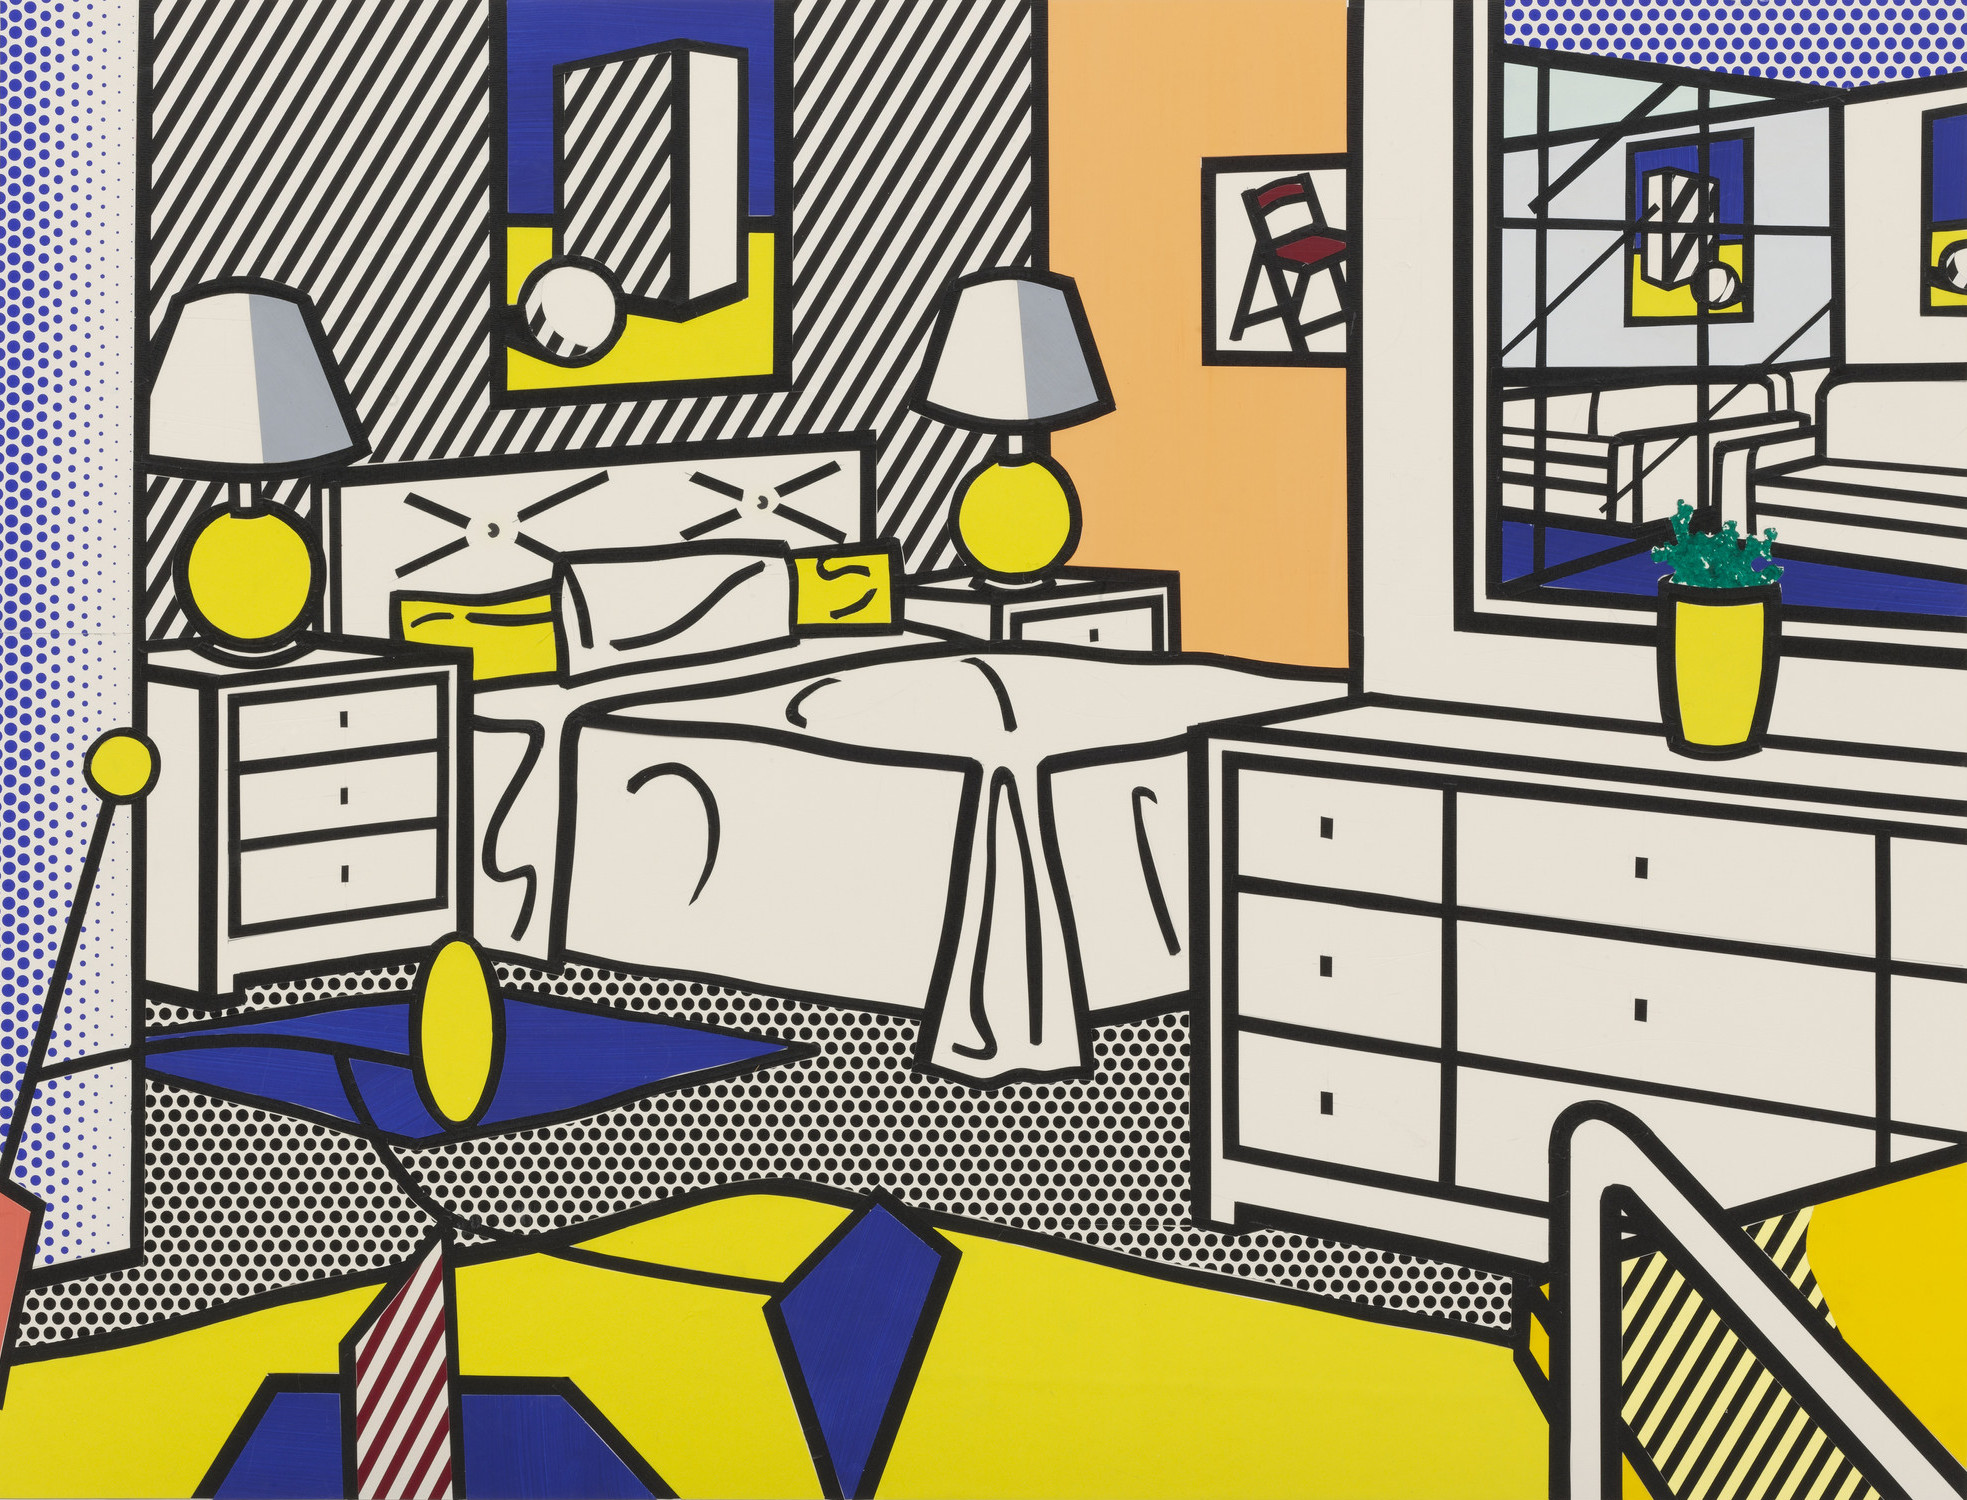 Roy Lichtenstein. Study for Interior with Mobile. 1992